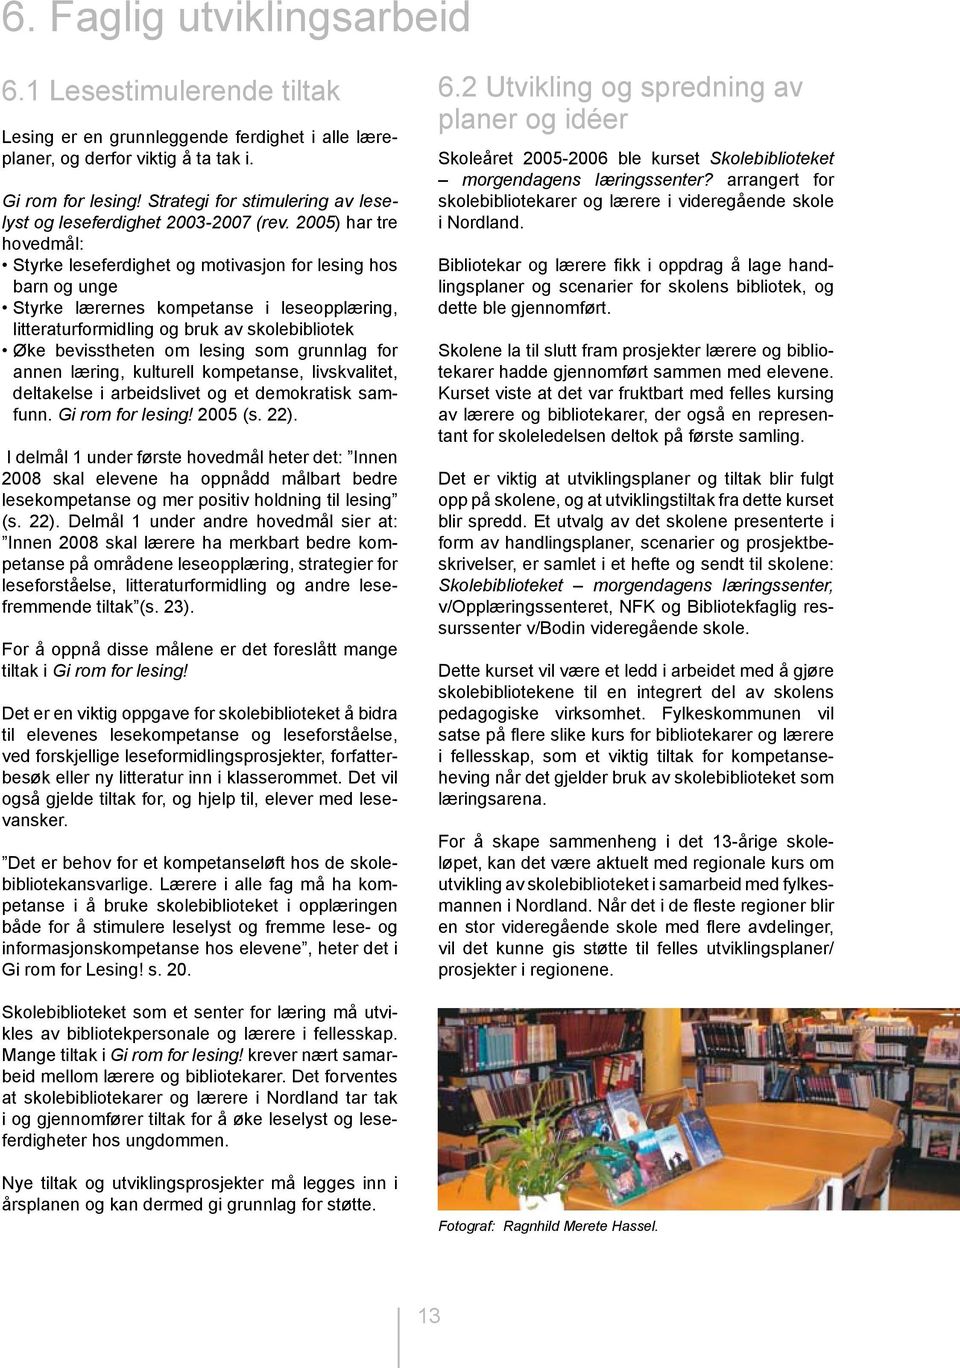 2005) har tre hovedmål: Styrke leseferdighet og motivasjon for lesing hos barn og unge Styrke lærernes kompetanse i leseopplæring, litteraturformidling og bruk av skolebibliotek Øke bevisstheten om